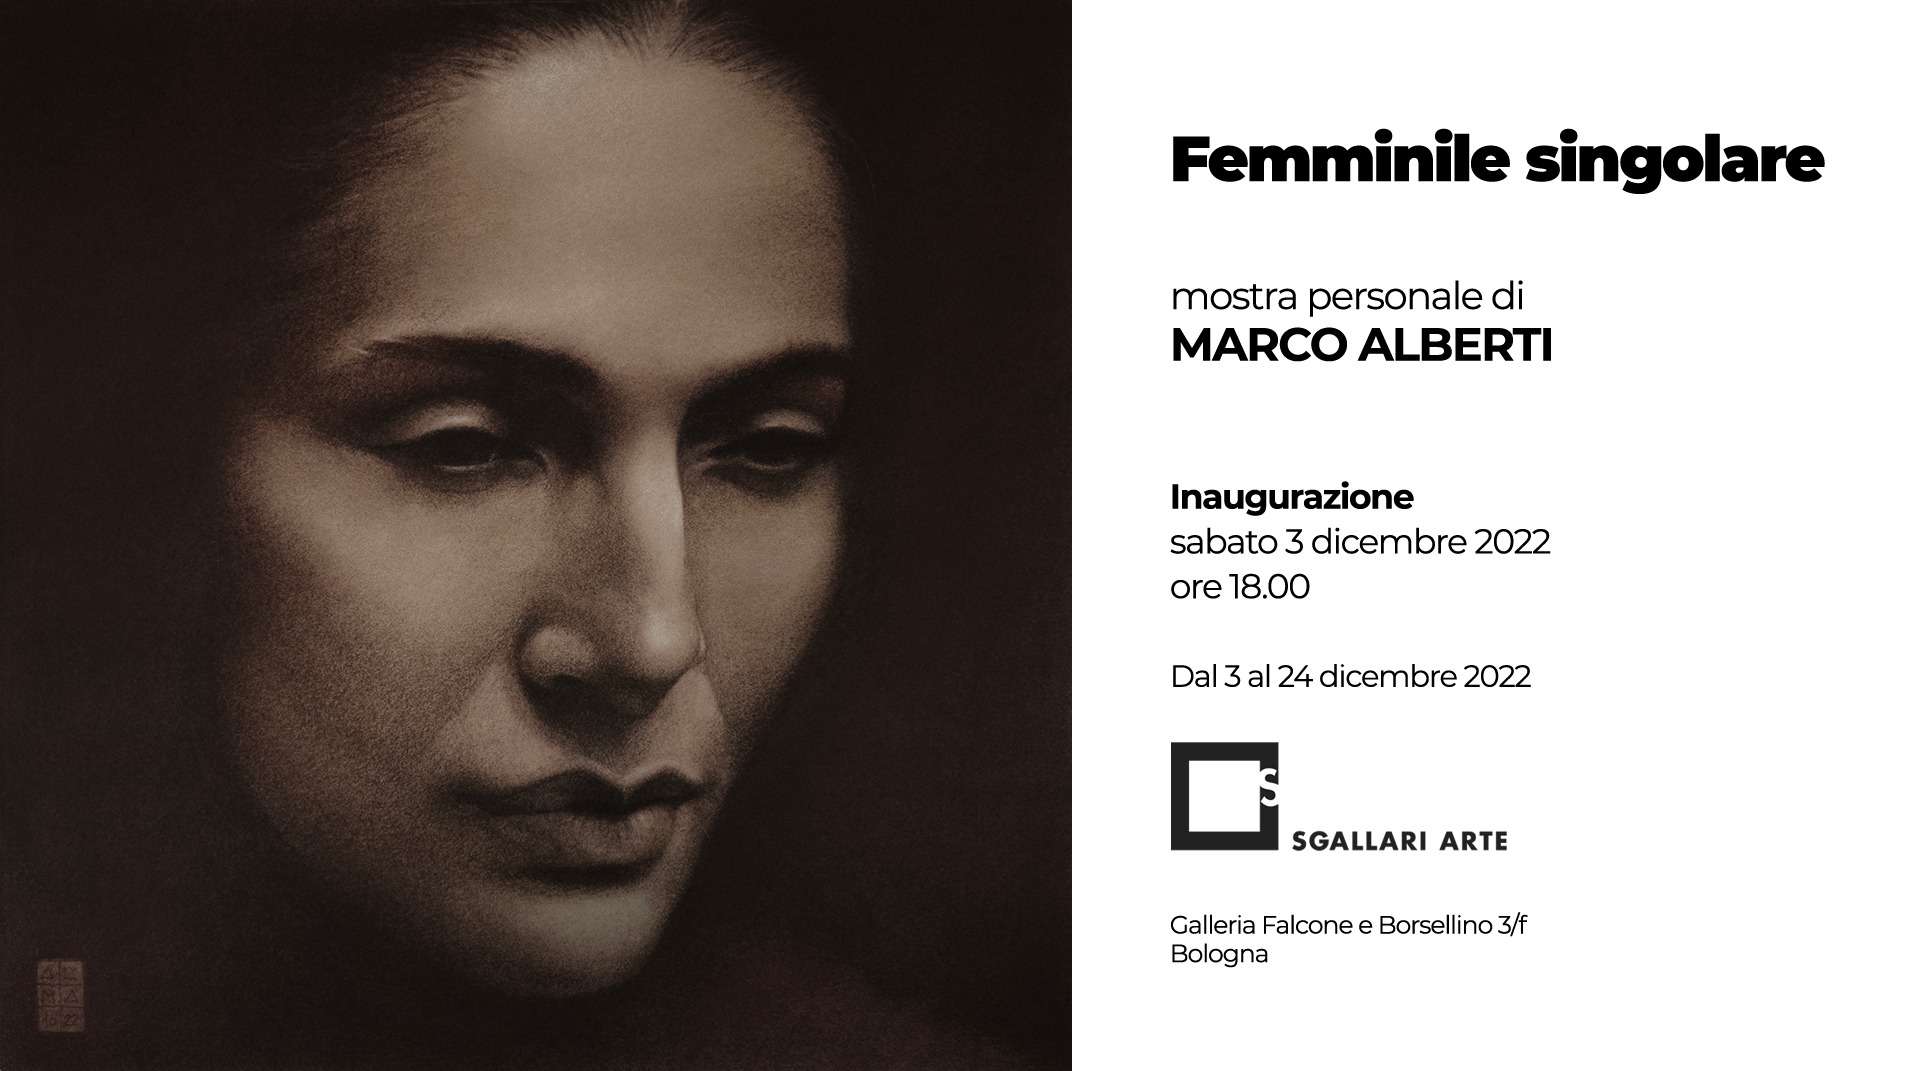 Femminile Singolare|Marco Alberti & Sgallari Arte